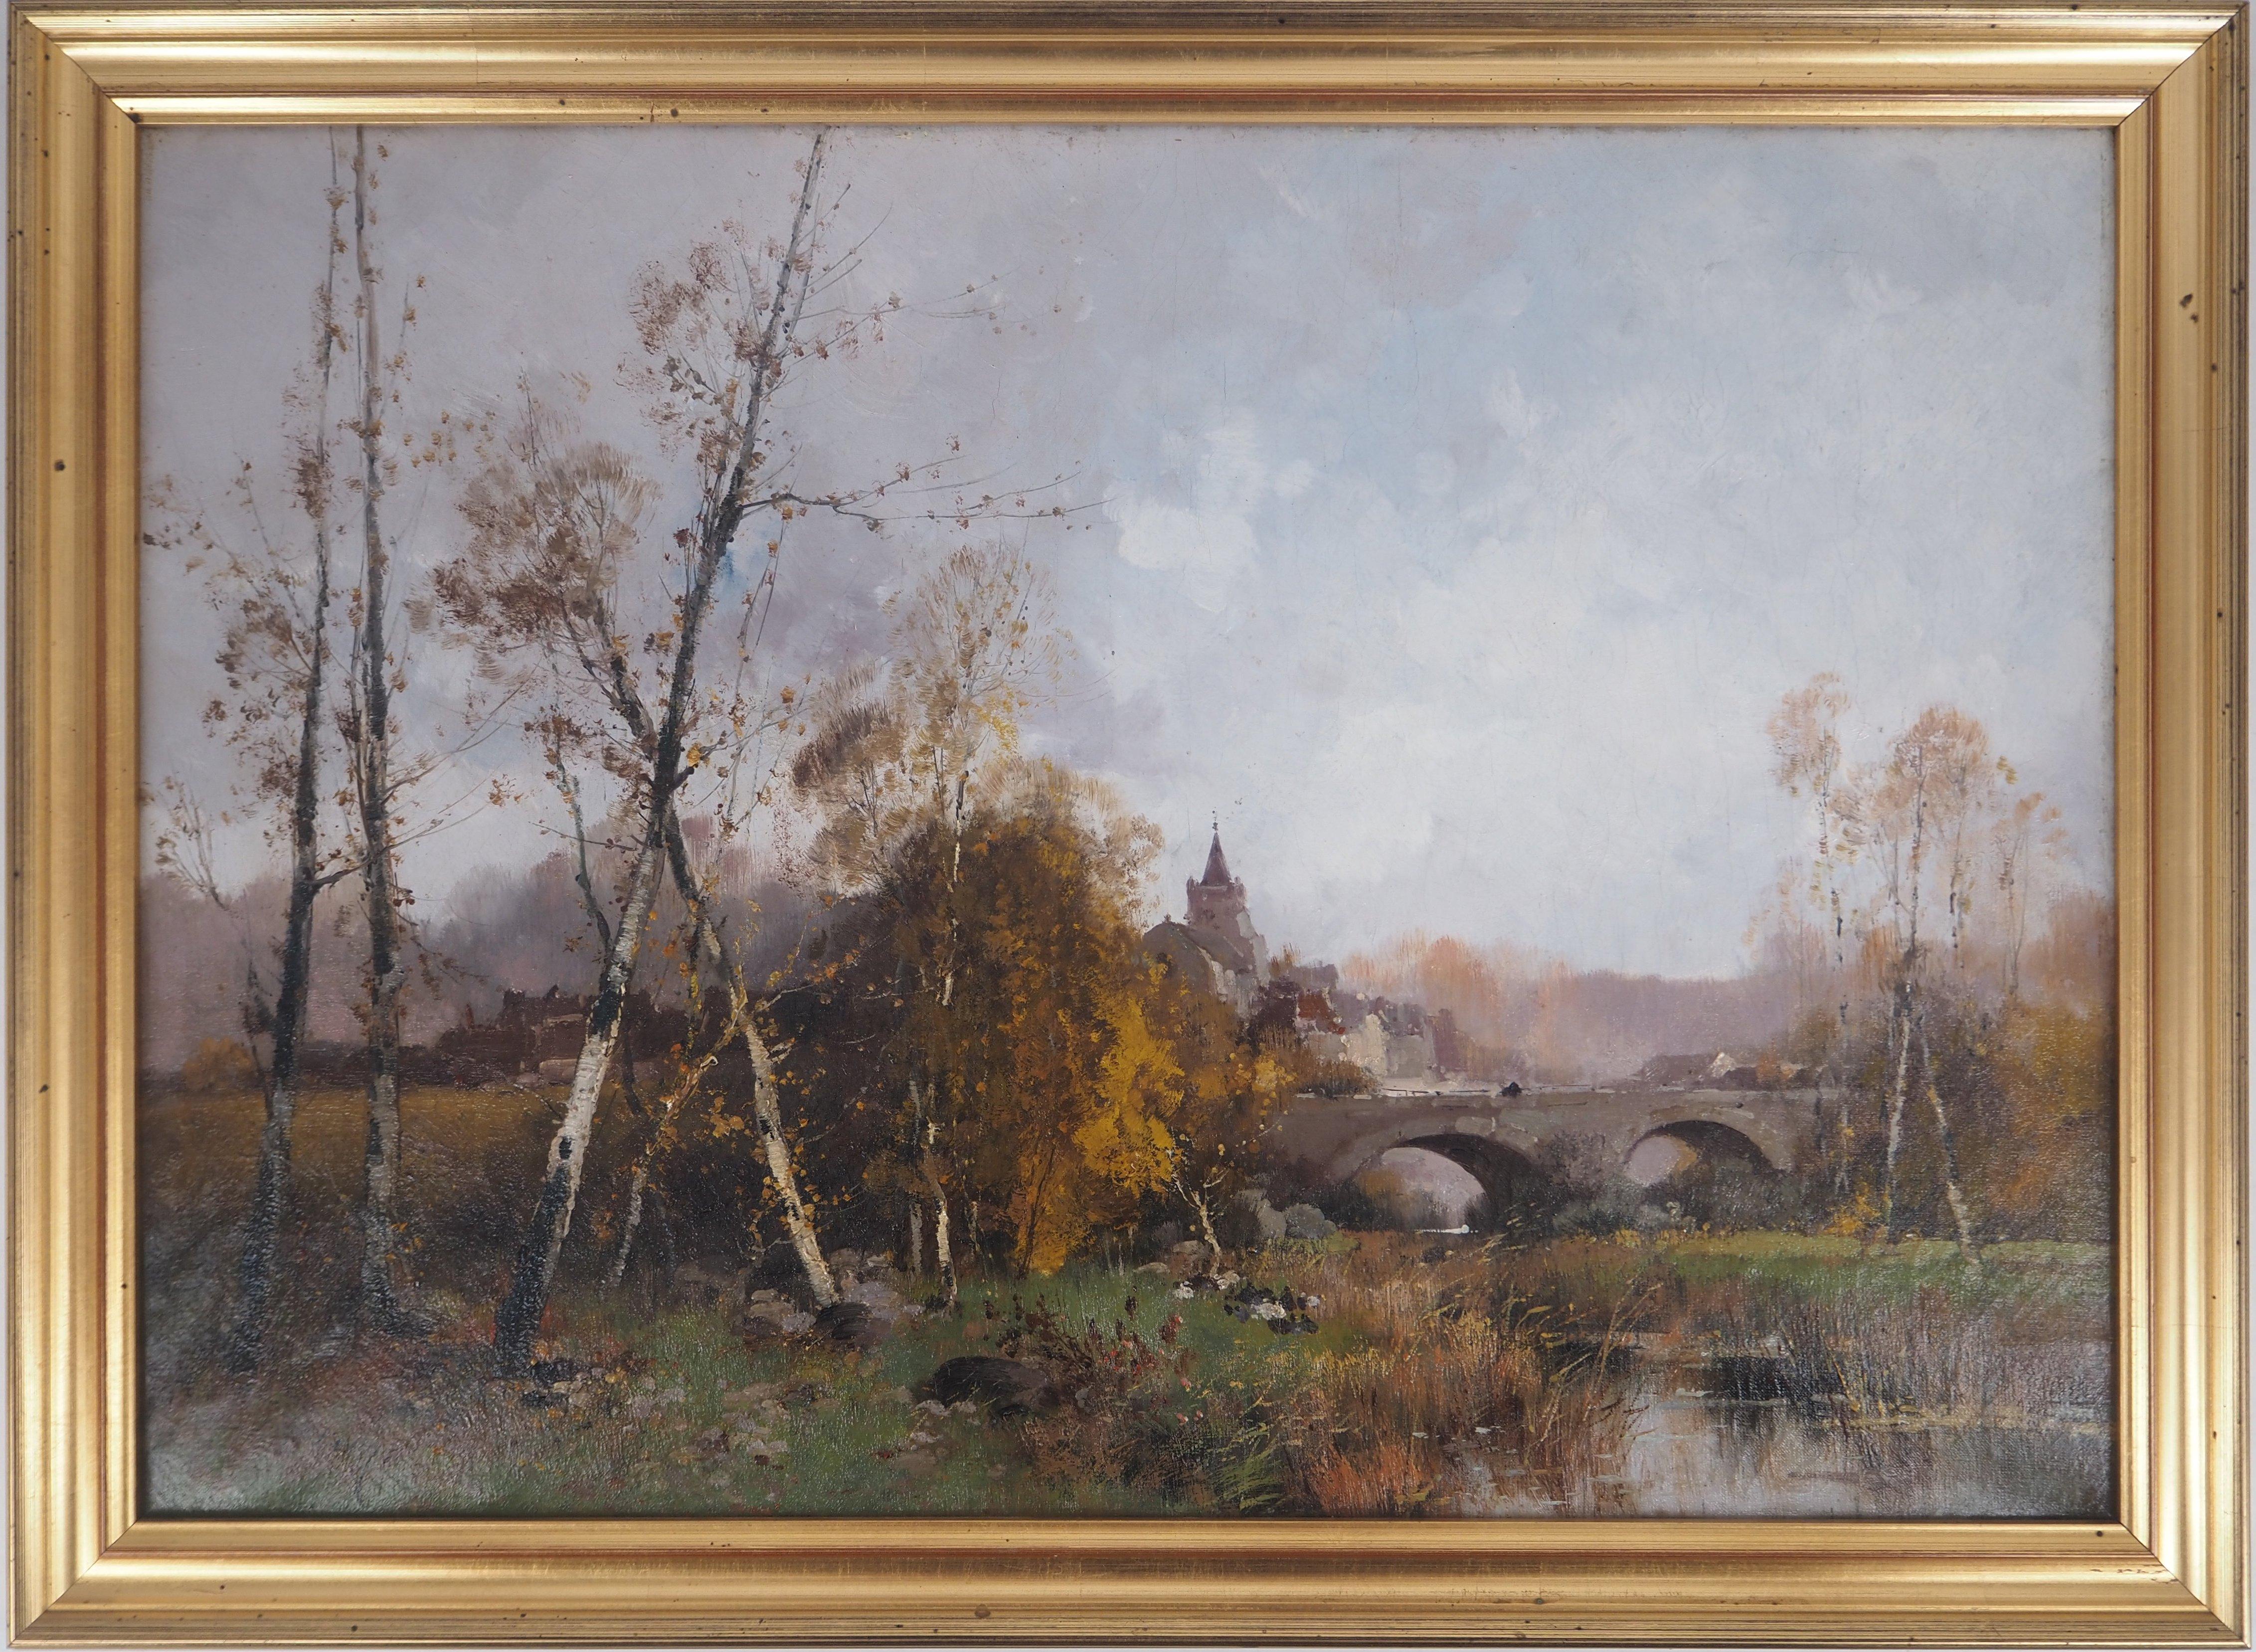 Eugene Galien-Laloue Landscape Painting - Normandy, Bridge Near a Village - Original painting on canvas - Signed